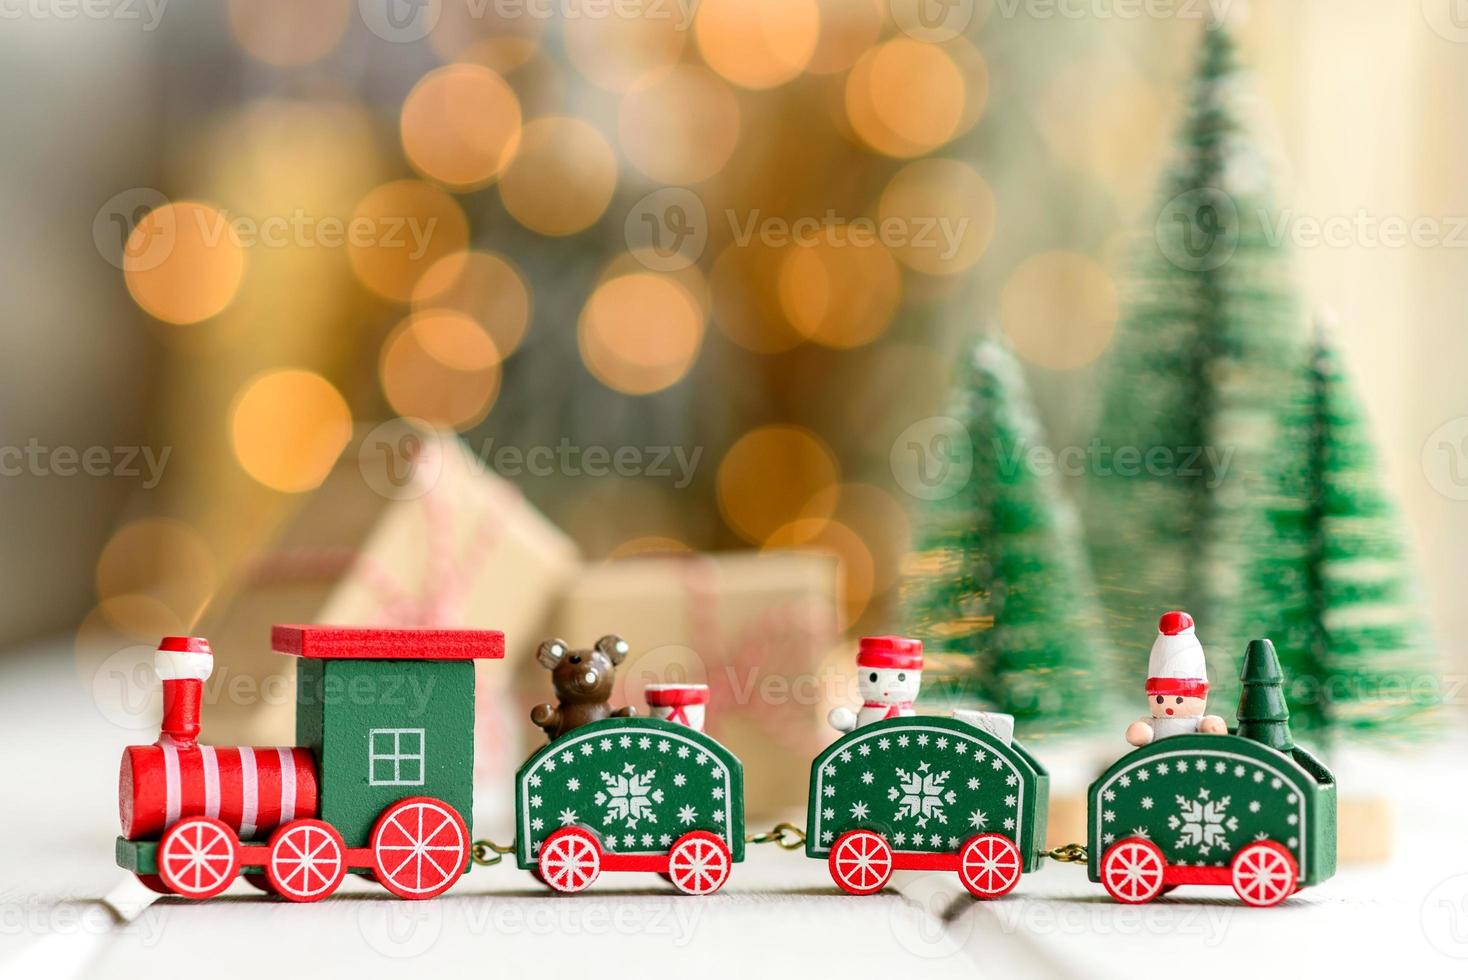 rode en groene elementen die worden gebruikt om de kerstboom te versieren foto